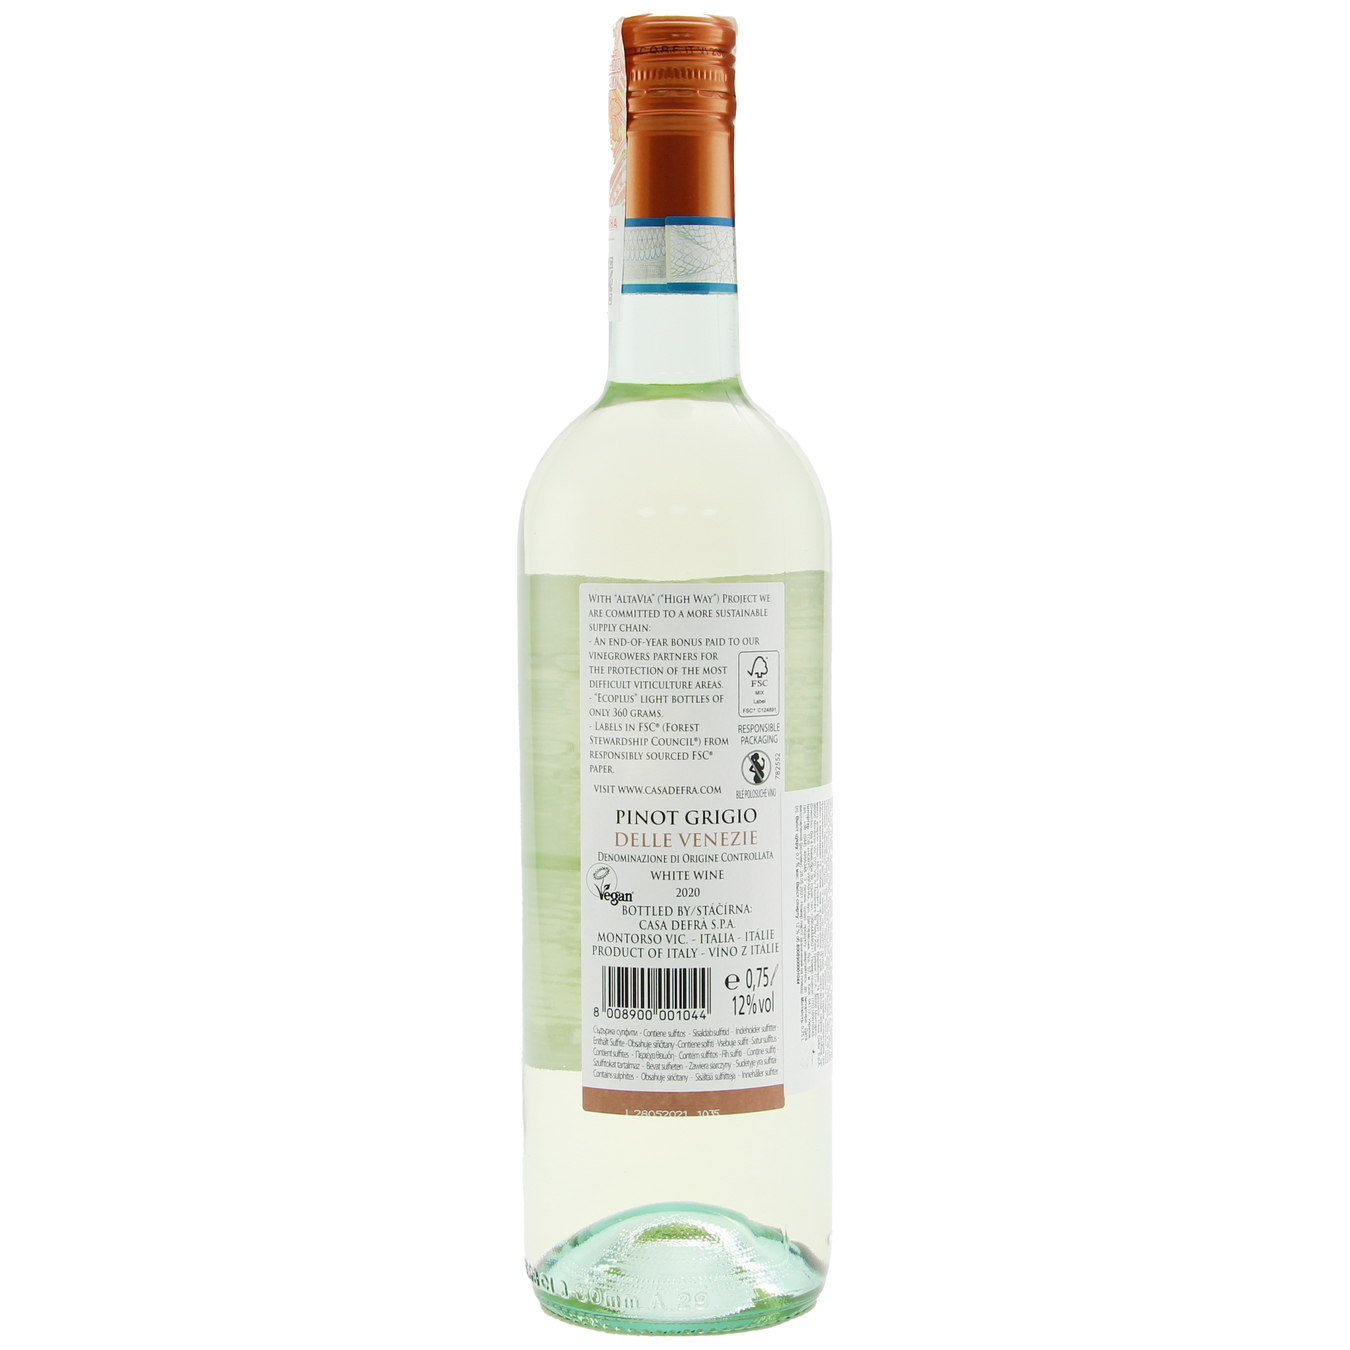 Вино Casa Defra Pinot Grigio Delle Venezie IGT белое полусладкое 12,5% 0,75л 2